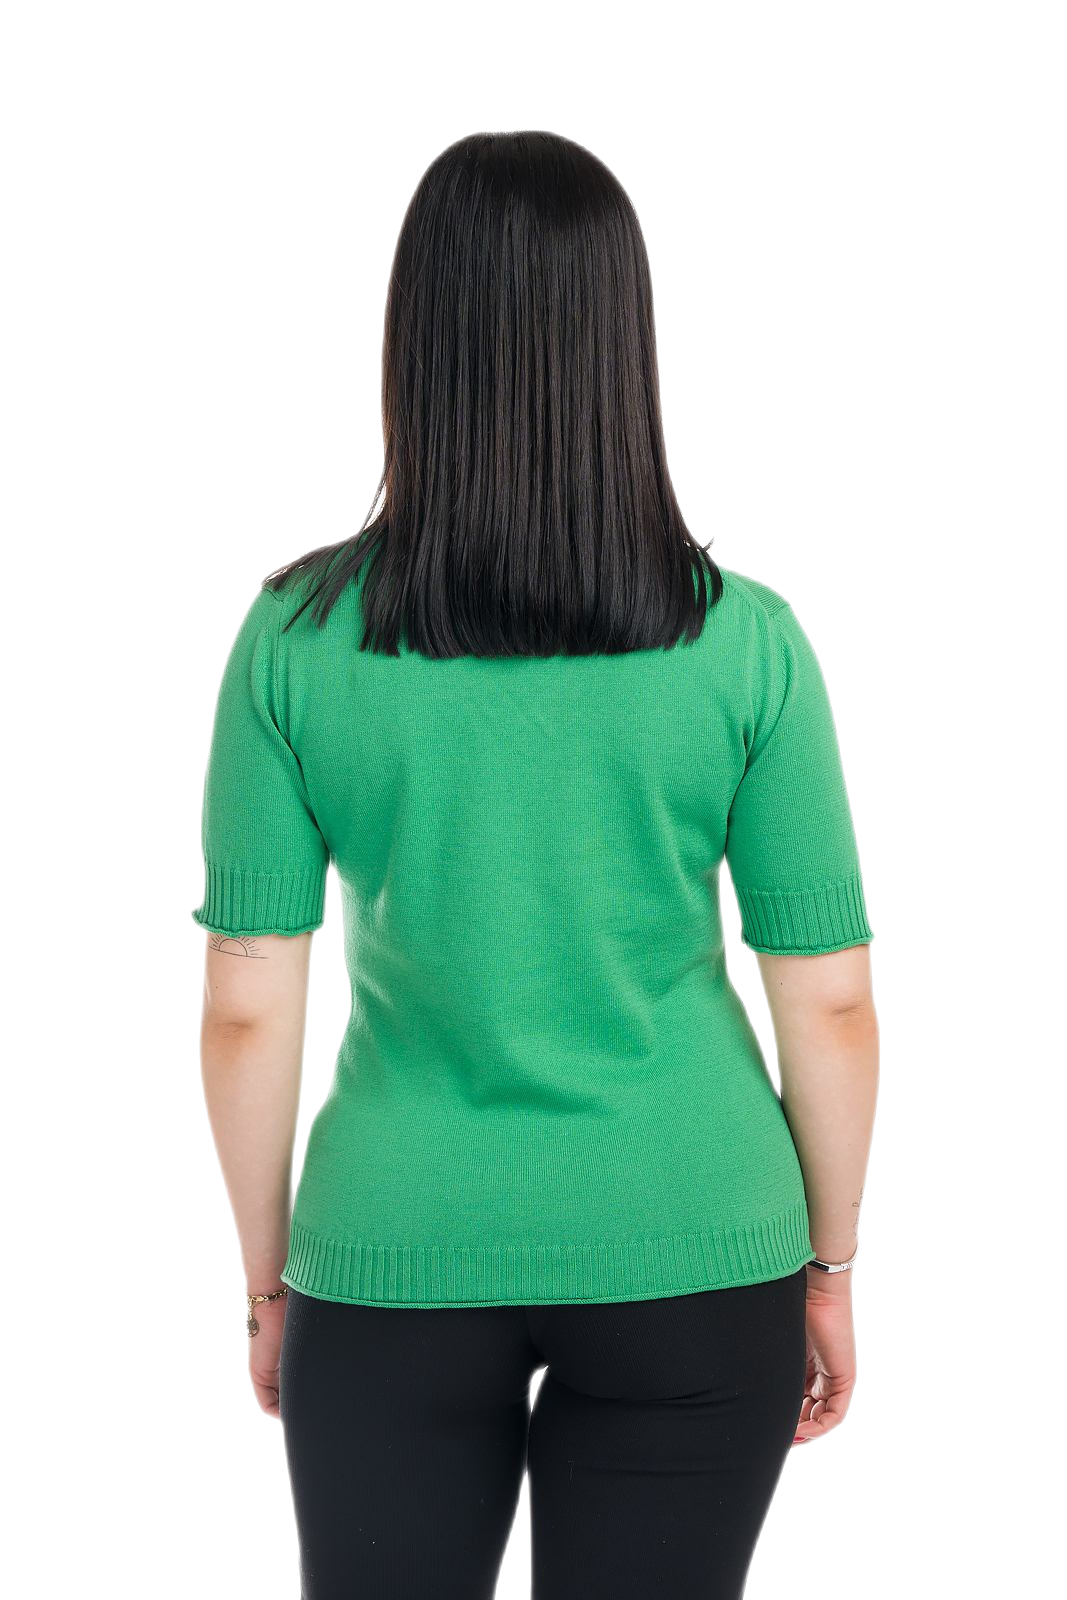 retro maglietta donna a manica corta estiva in cotone verde